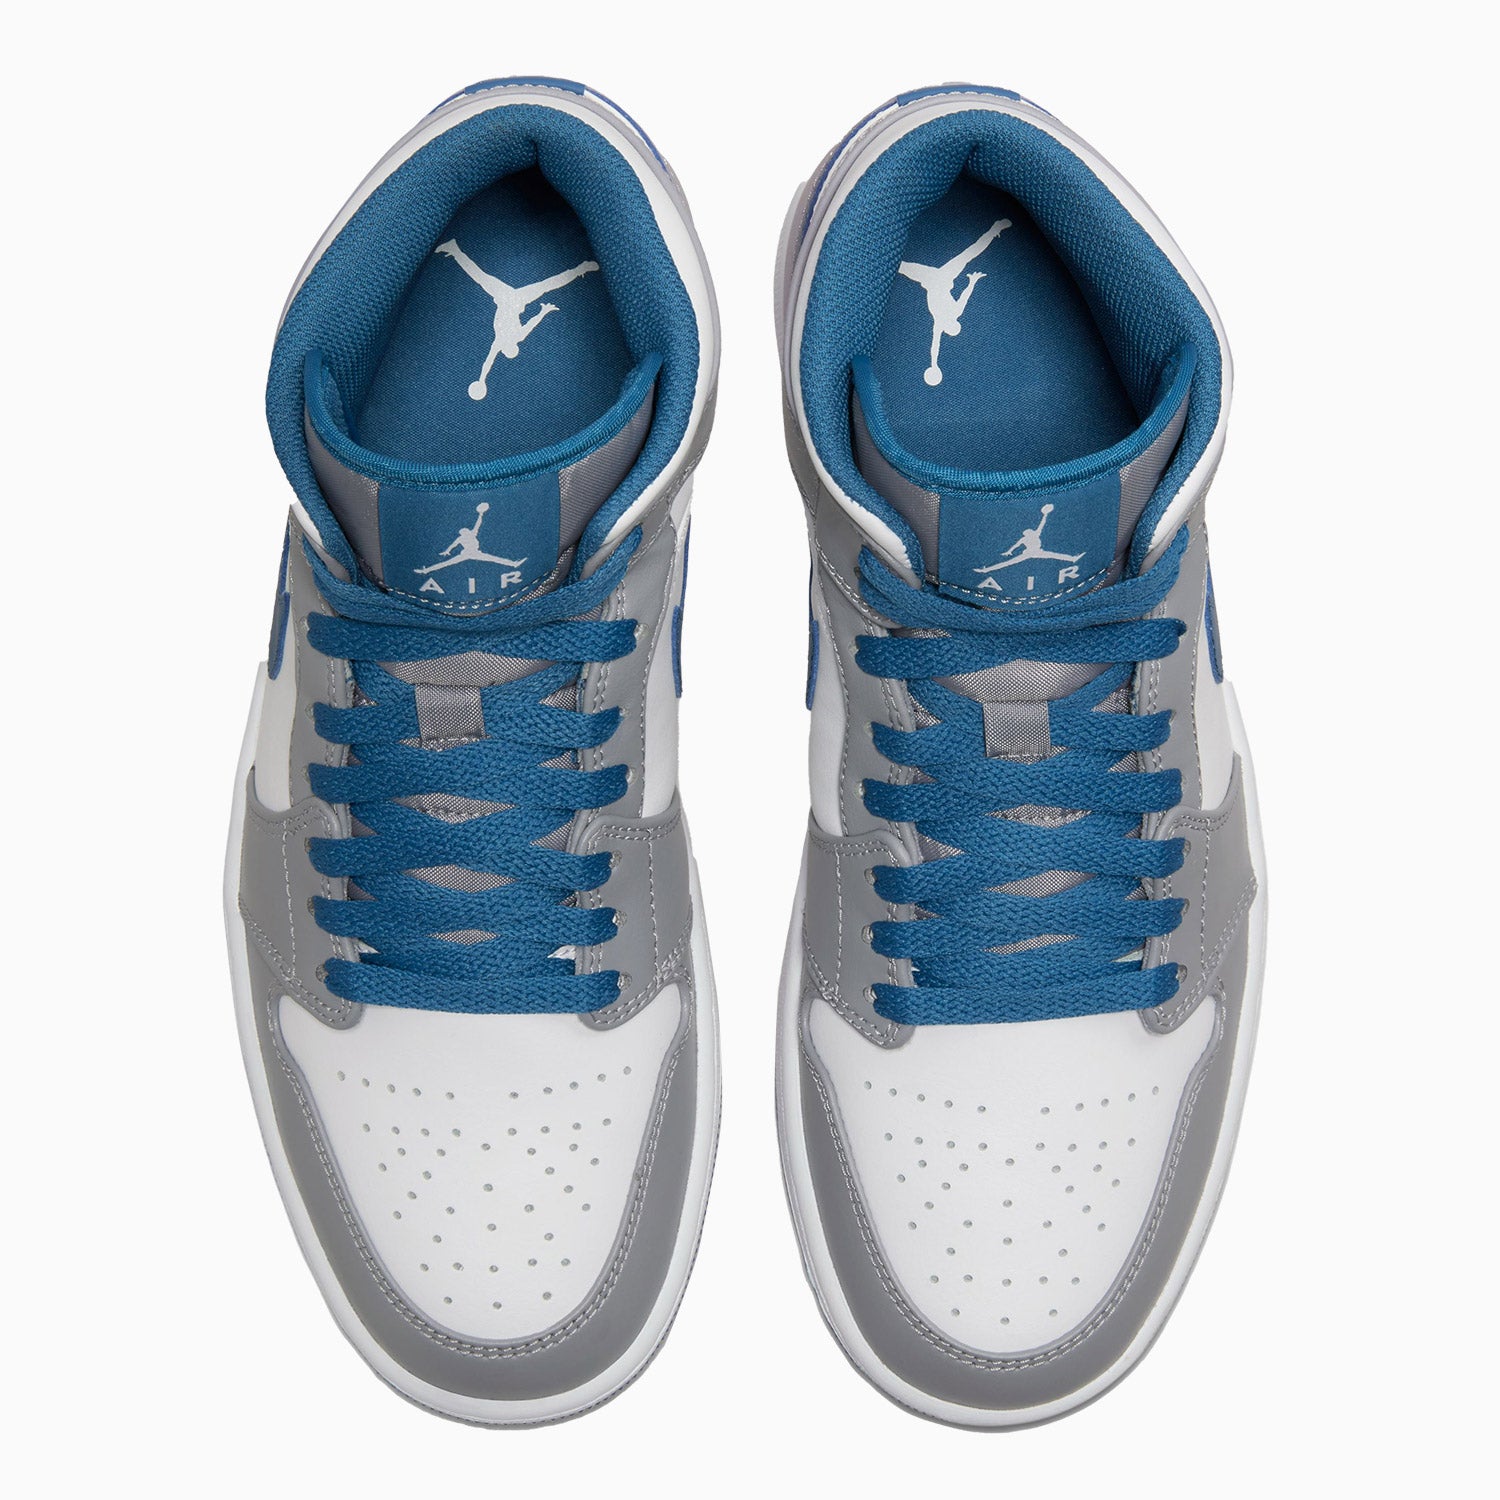 mens-air-jordan-1-mid-true-blue-shoes-dq8426-014